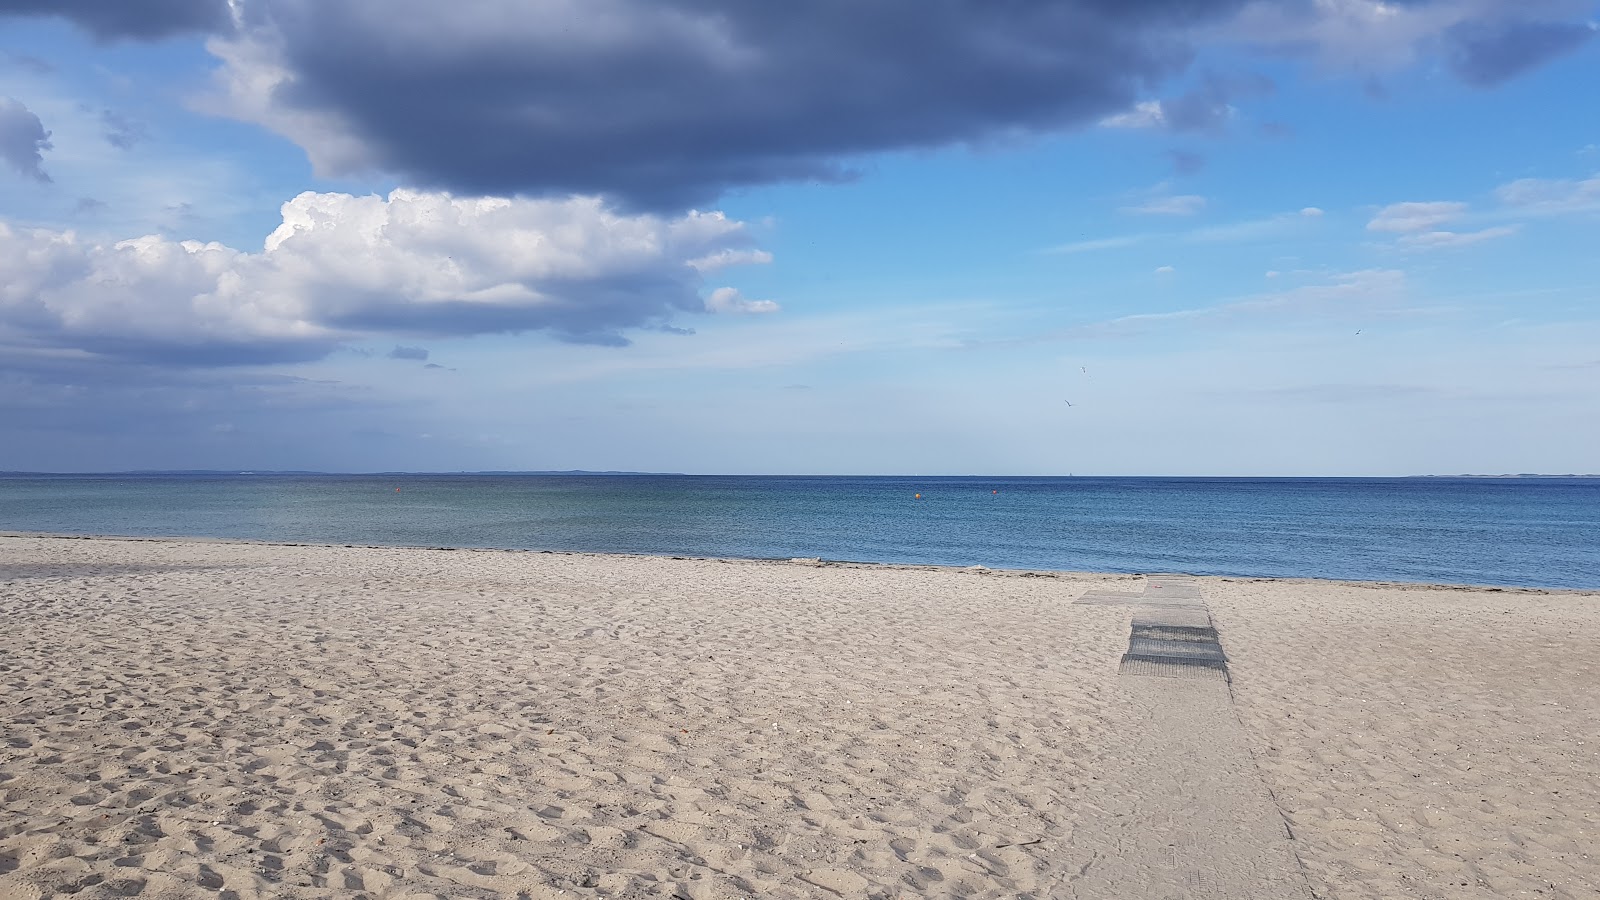 Saksild Beach'in fotoğrafı geniş plaj ile birlikte